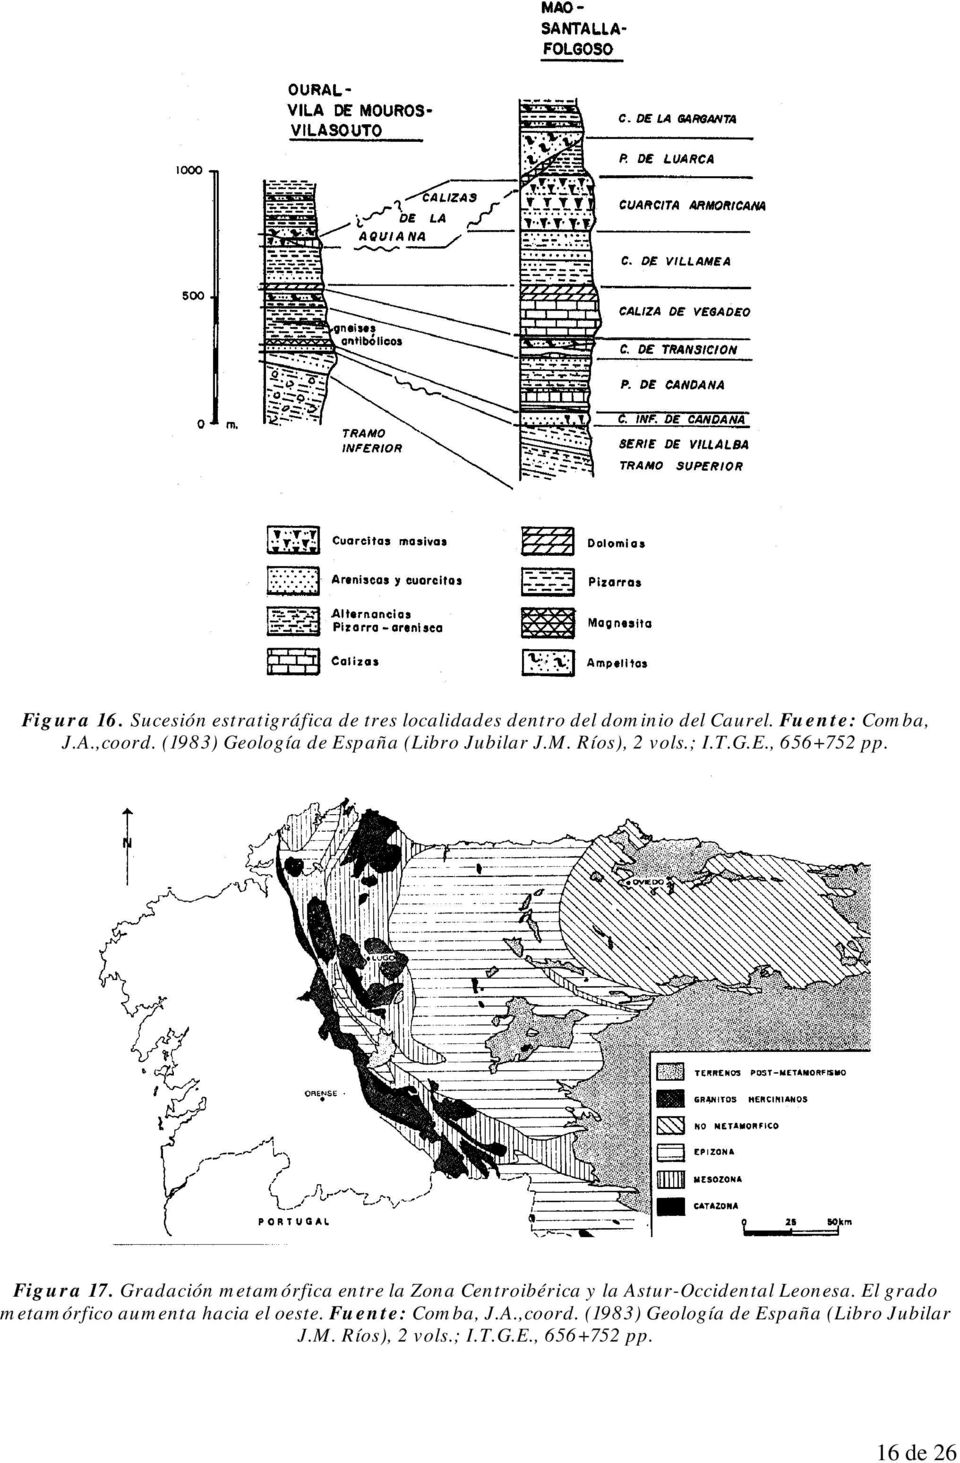 Gradación metamórfica entre la Zona Centroibérica y la Astur-Occidental Leonesa.